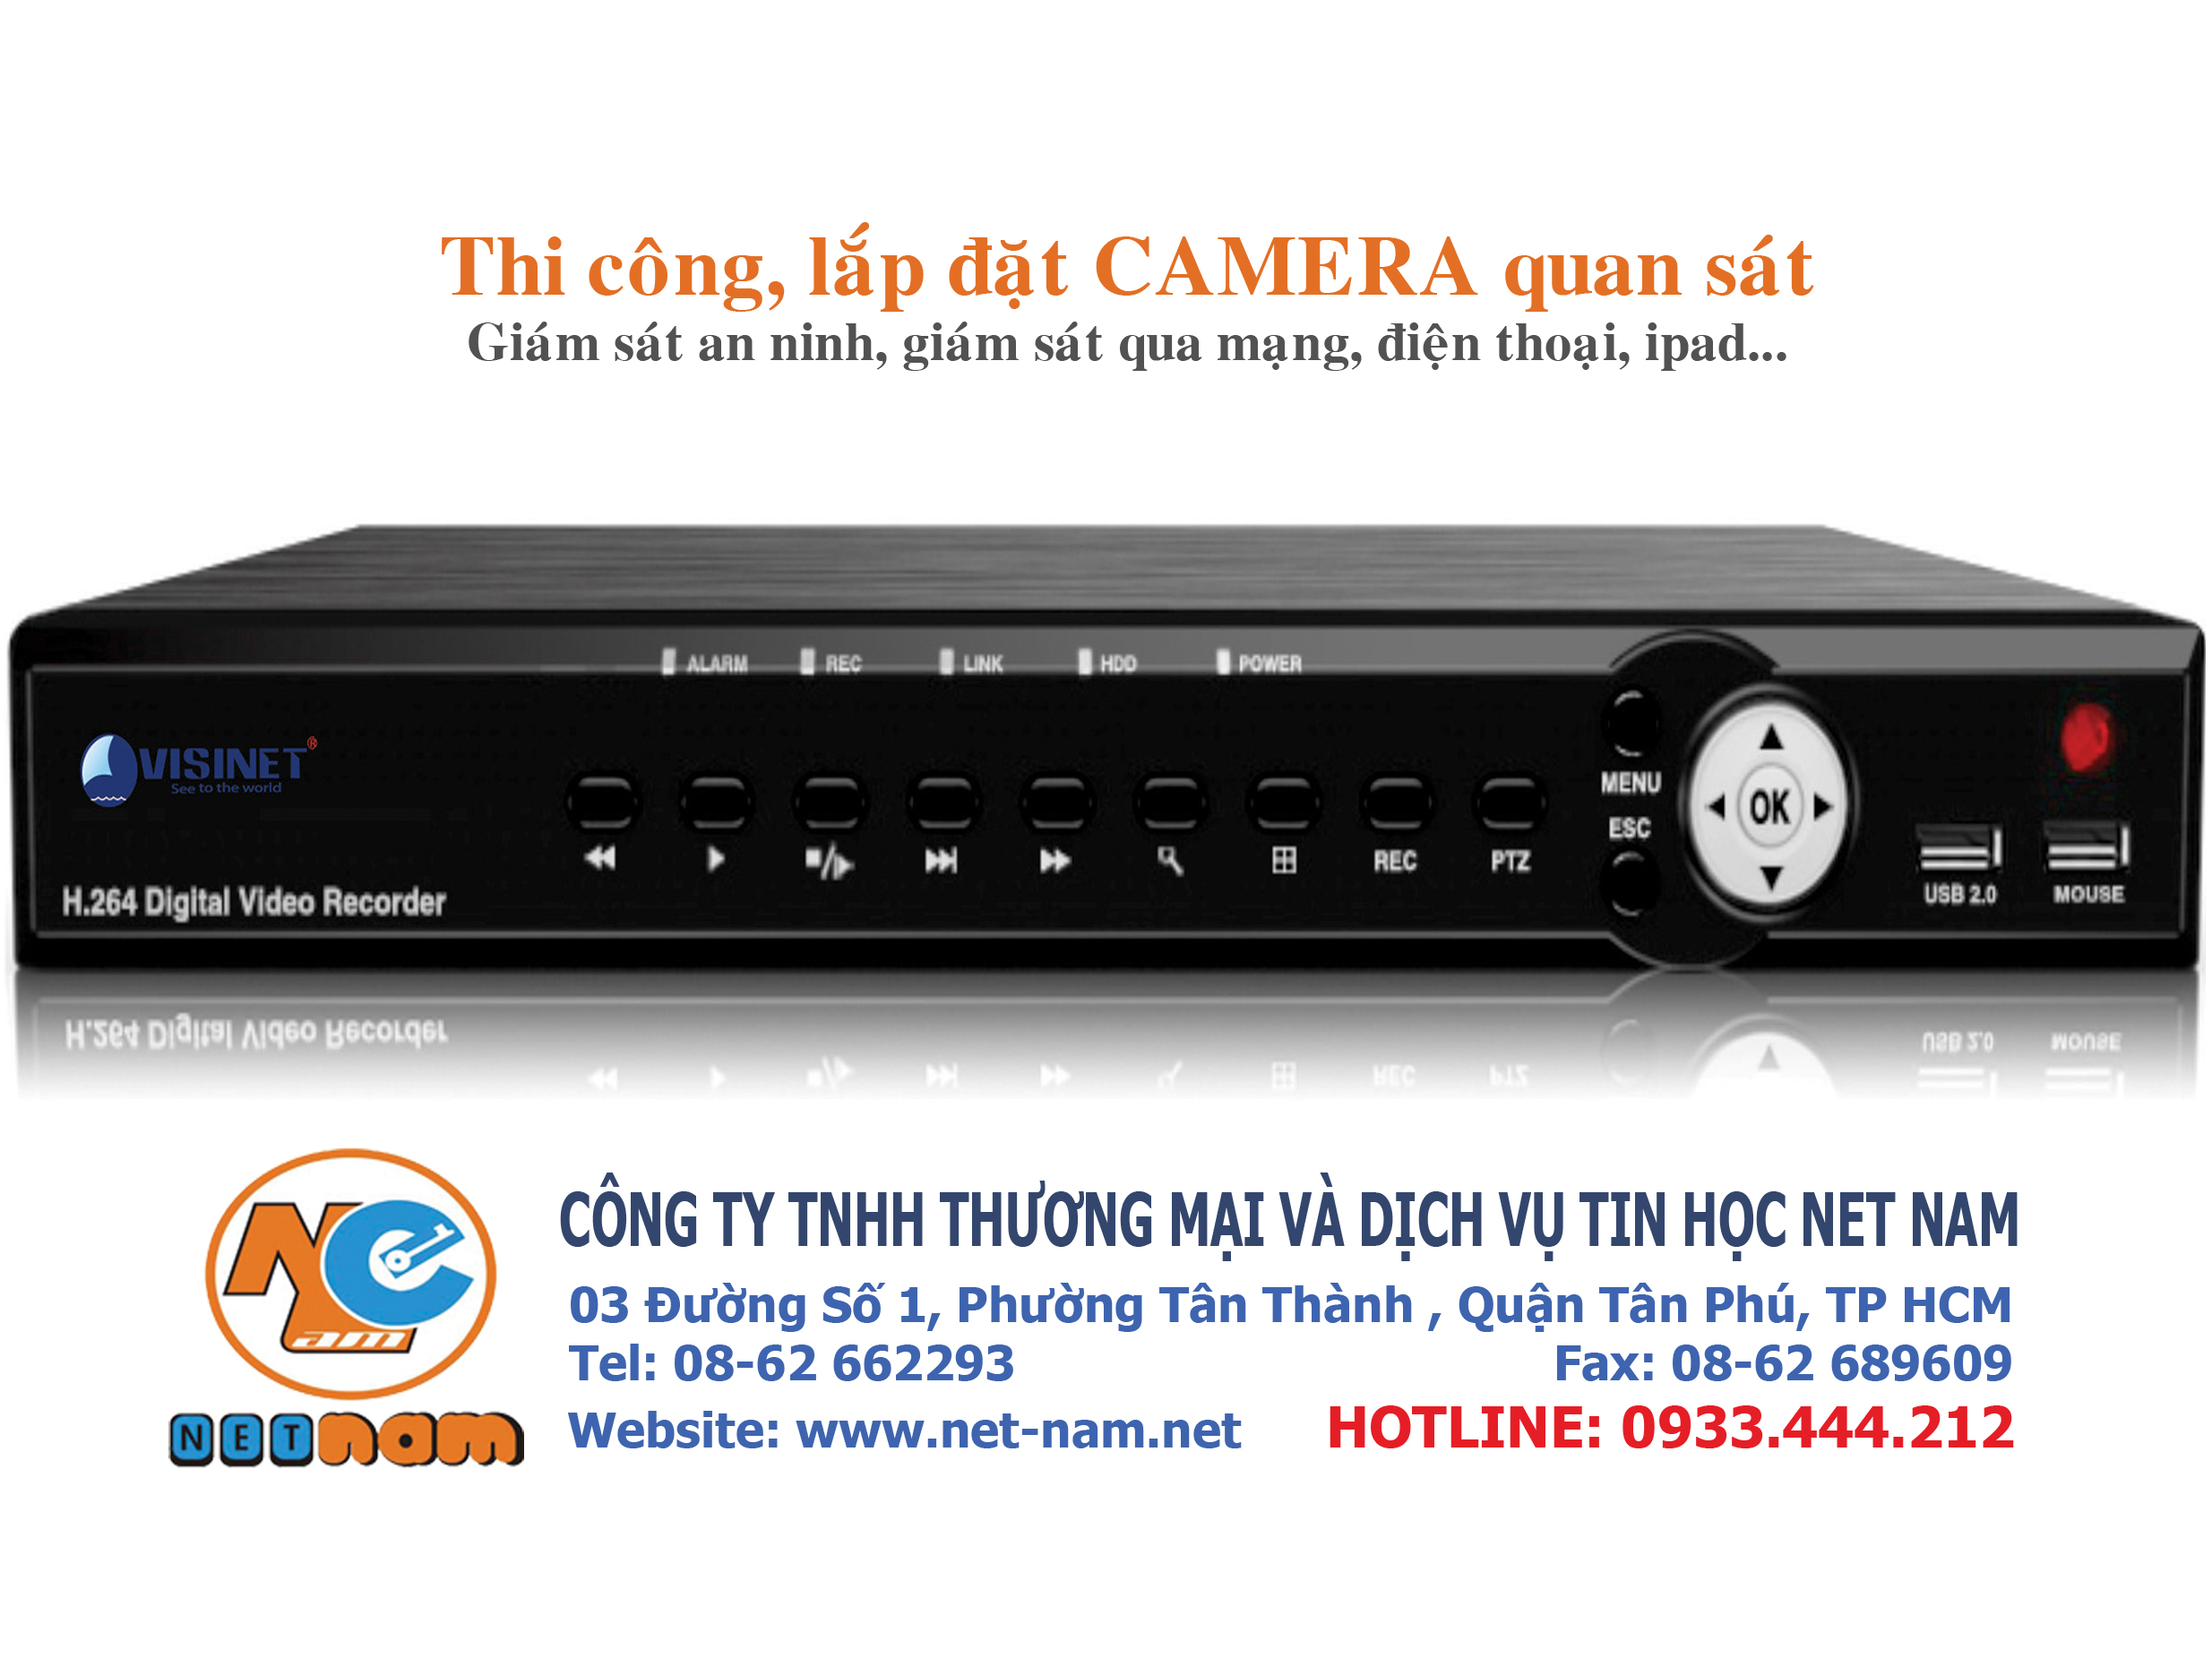 DVR VS-9604i - Công Ty TNHH Thương Mại Và Dịch Vụ Tin Học Net Nam